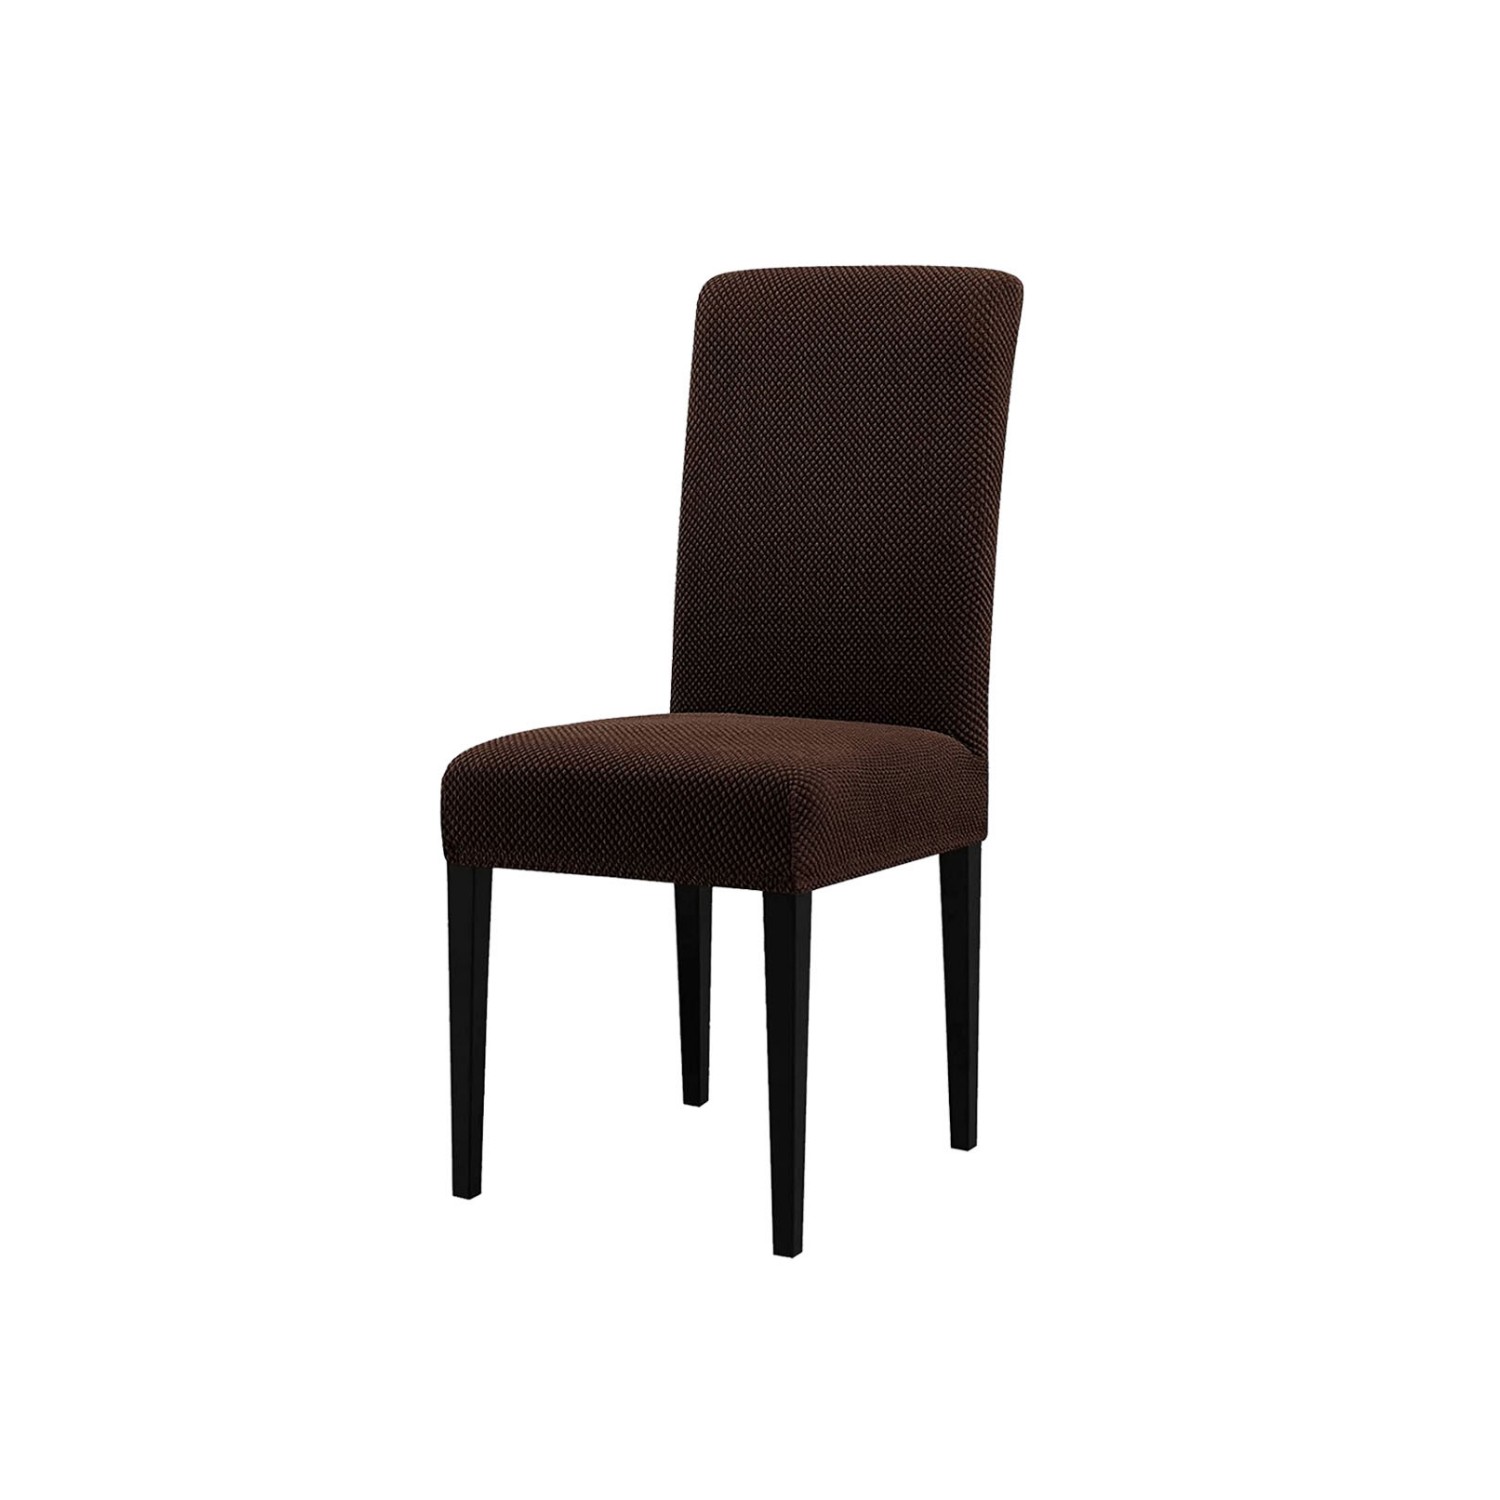 Чехол на стул LuxAlto Коллекция Fukra oval коричневый - фото 1